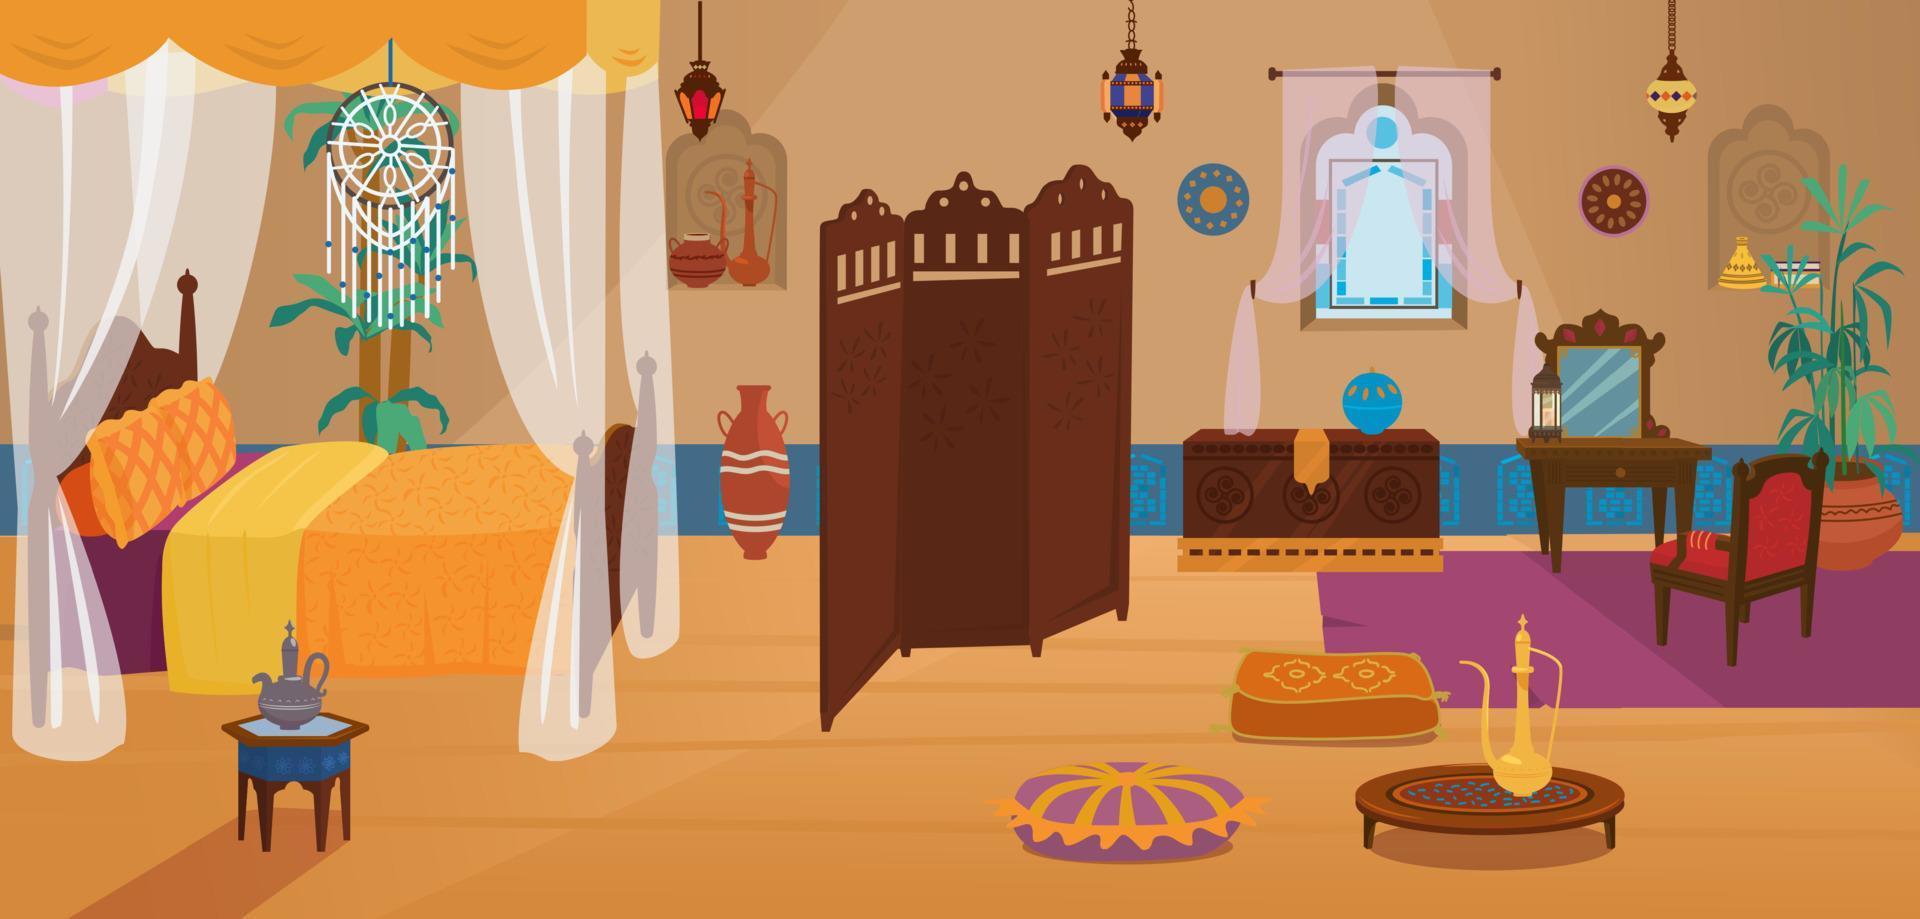 camera da letto tradizionale mediorientale con mobili e elementi decorativi. vettore del fumetto.